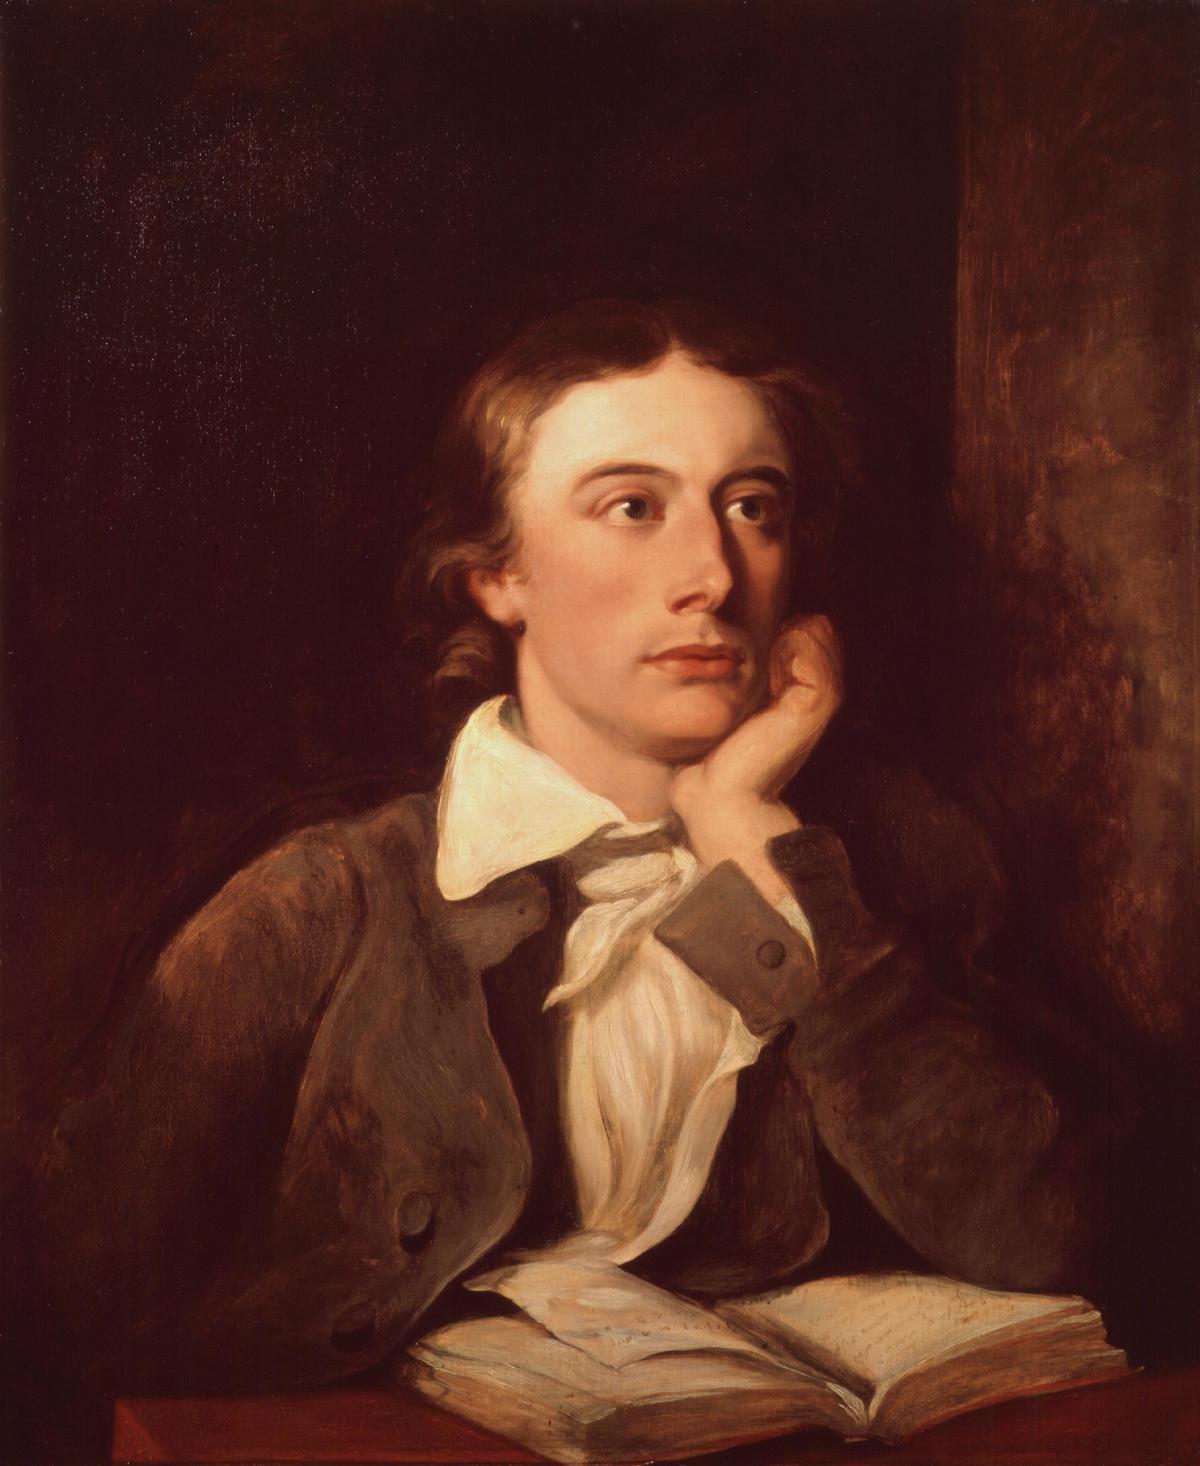 21 - John Keats